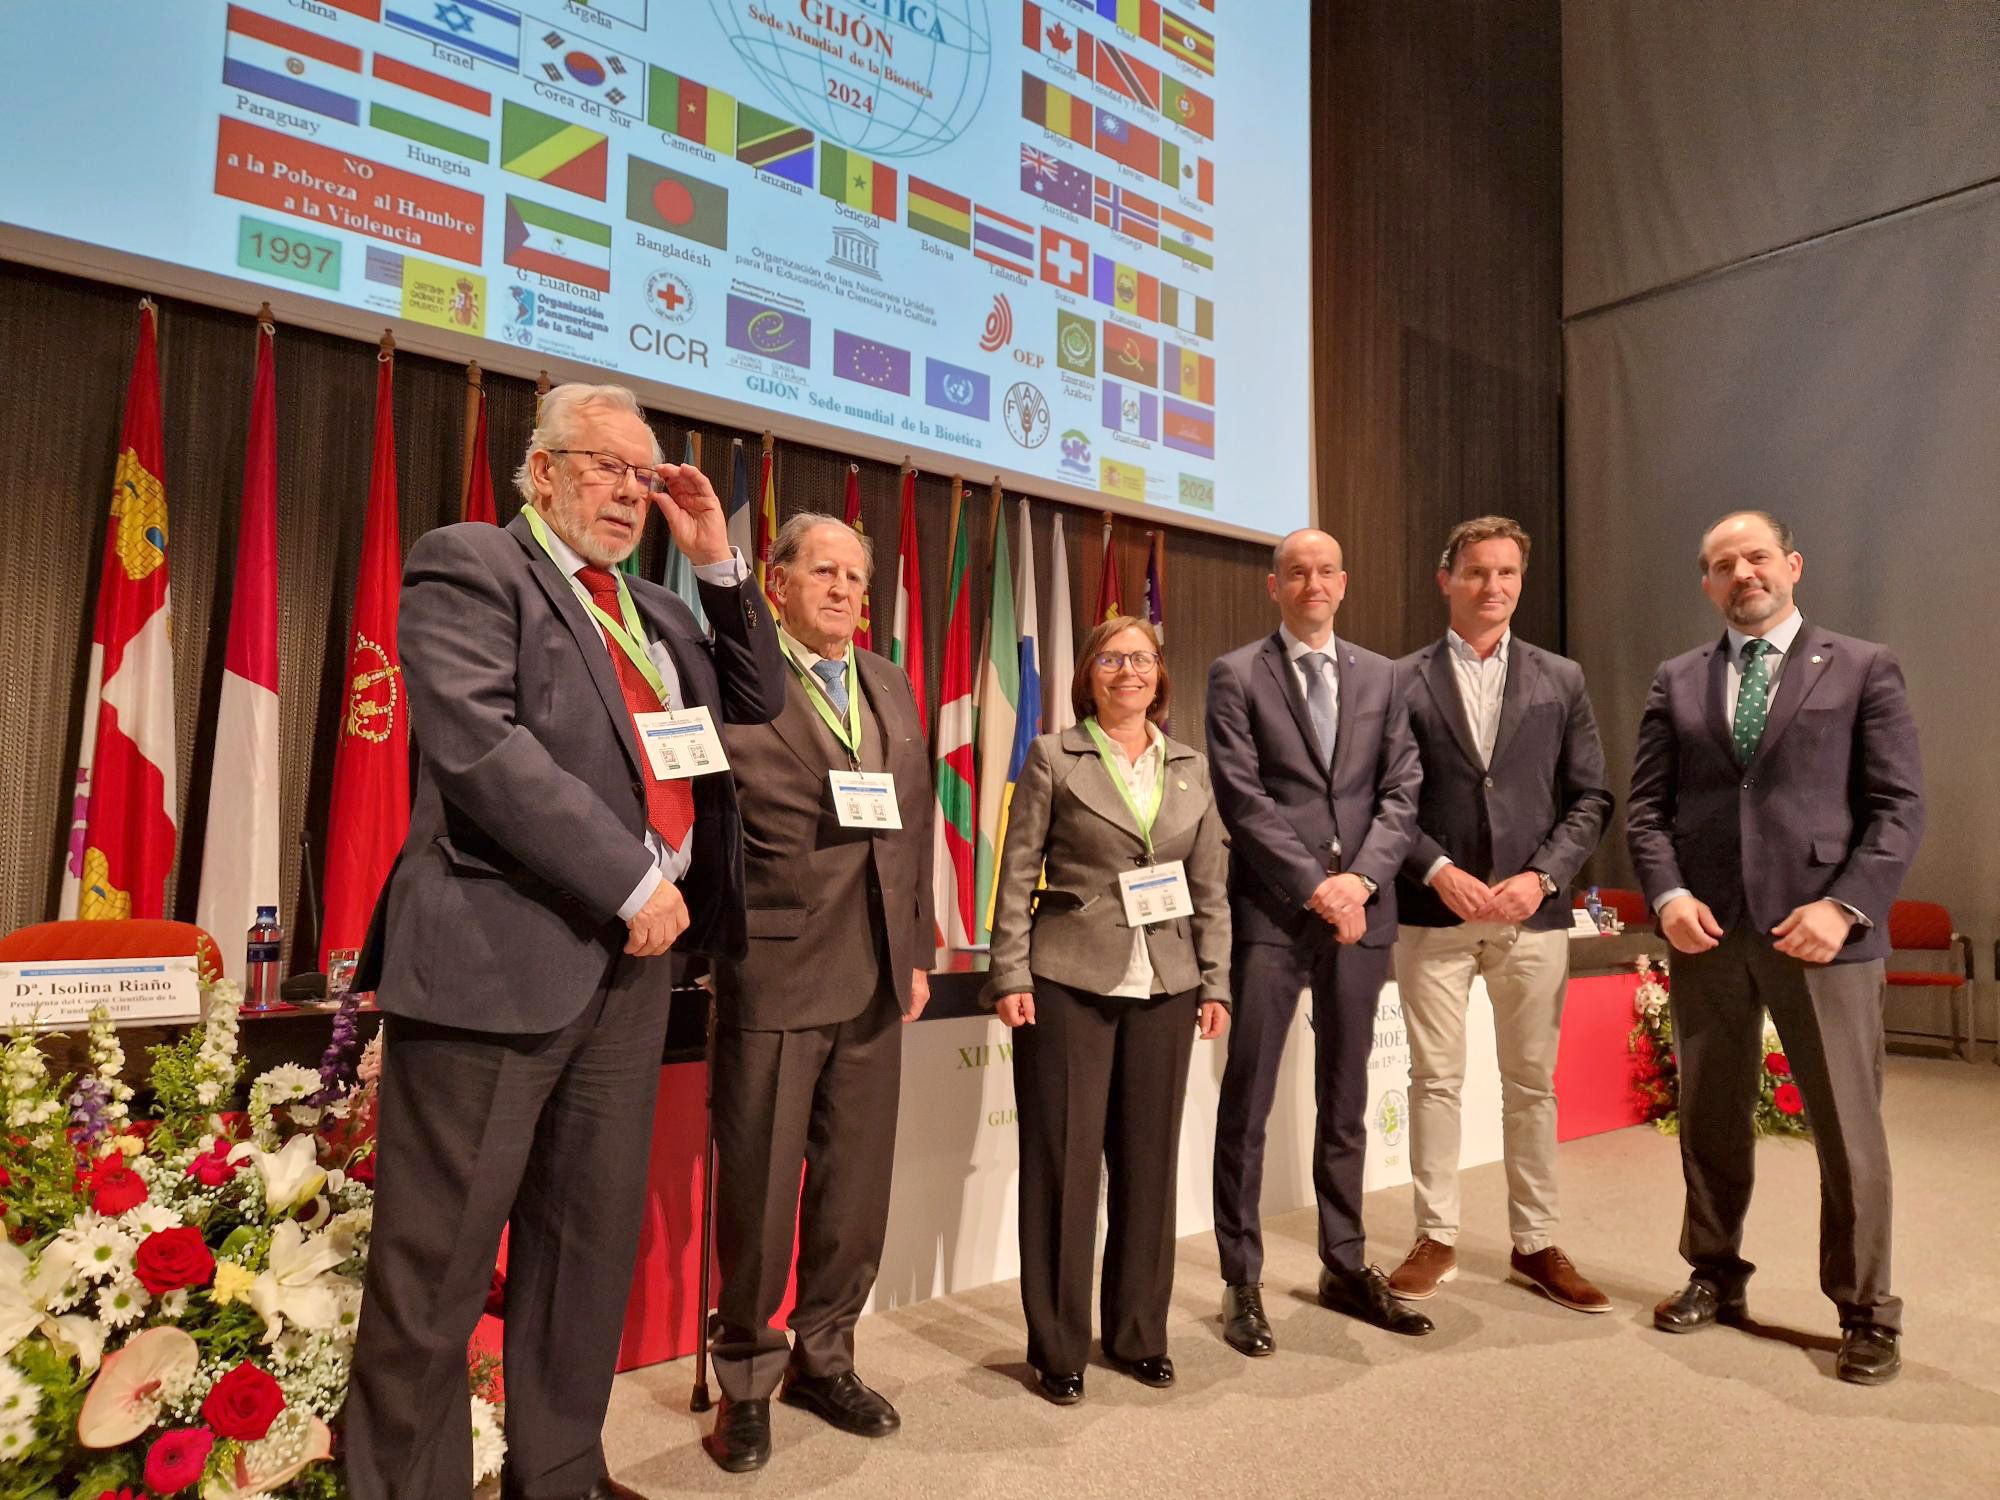 La clausura del Congreso Mundial de Bioética en Gijón, en imágenes